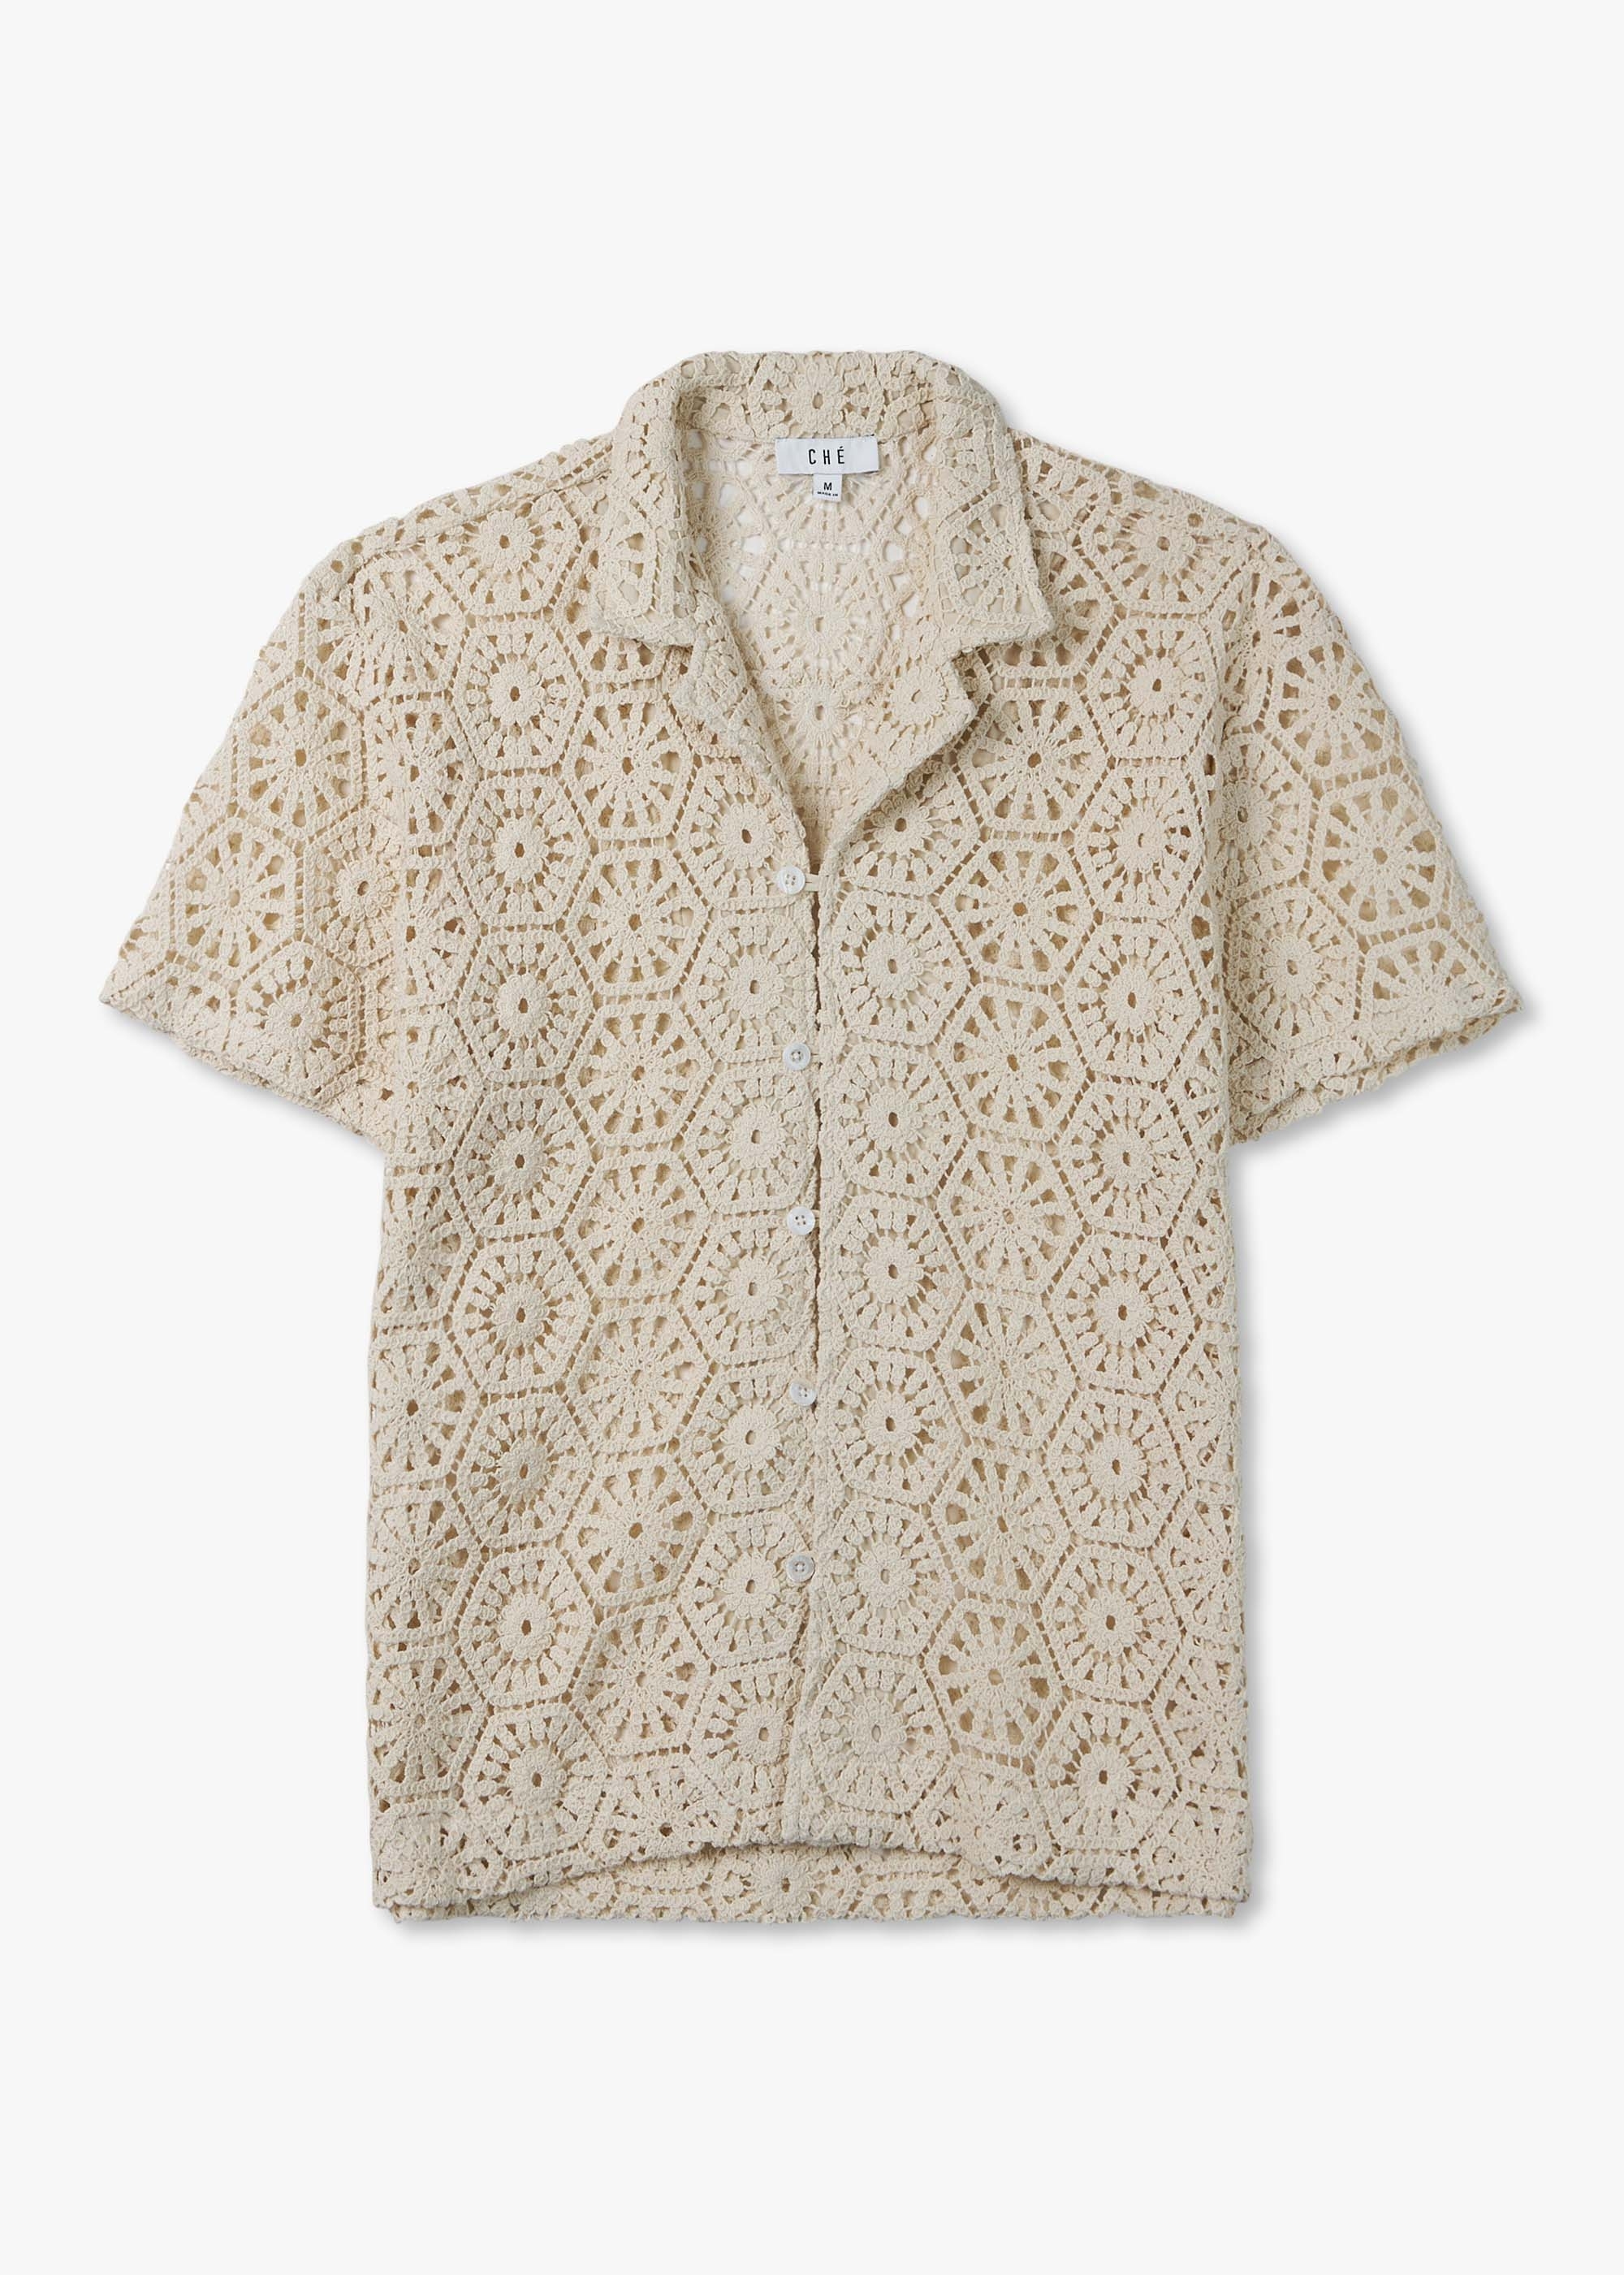 Che Mens Gentleman Crochet Shirt In Ivory